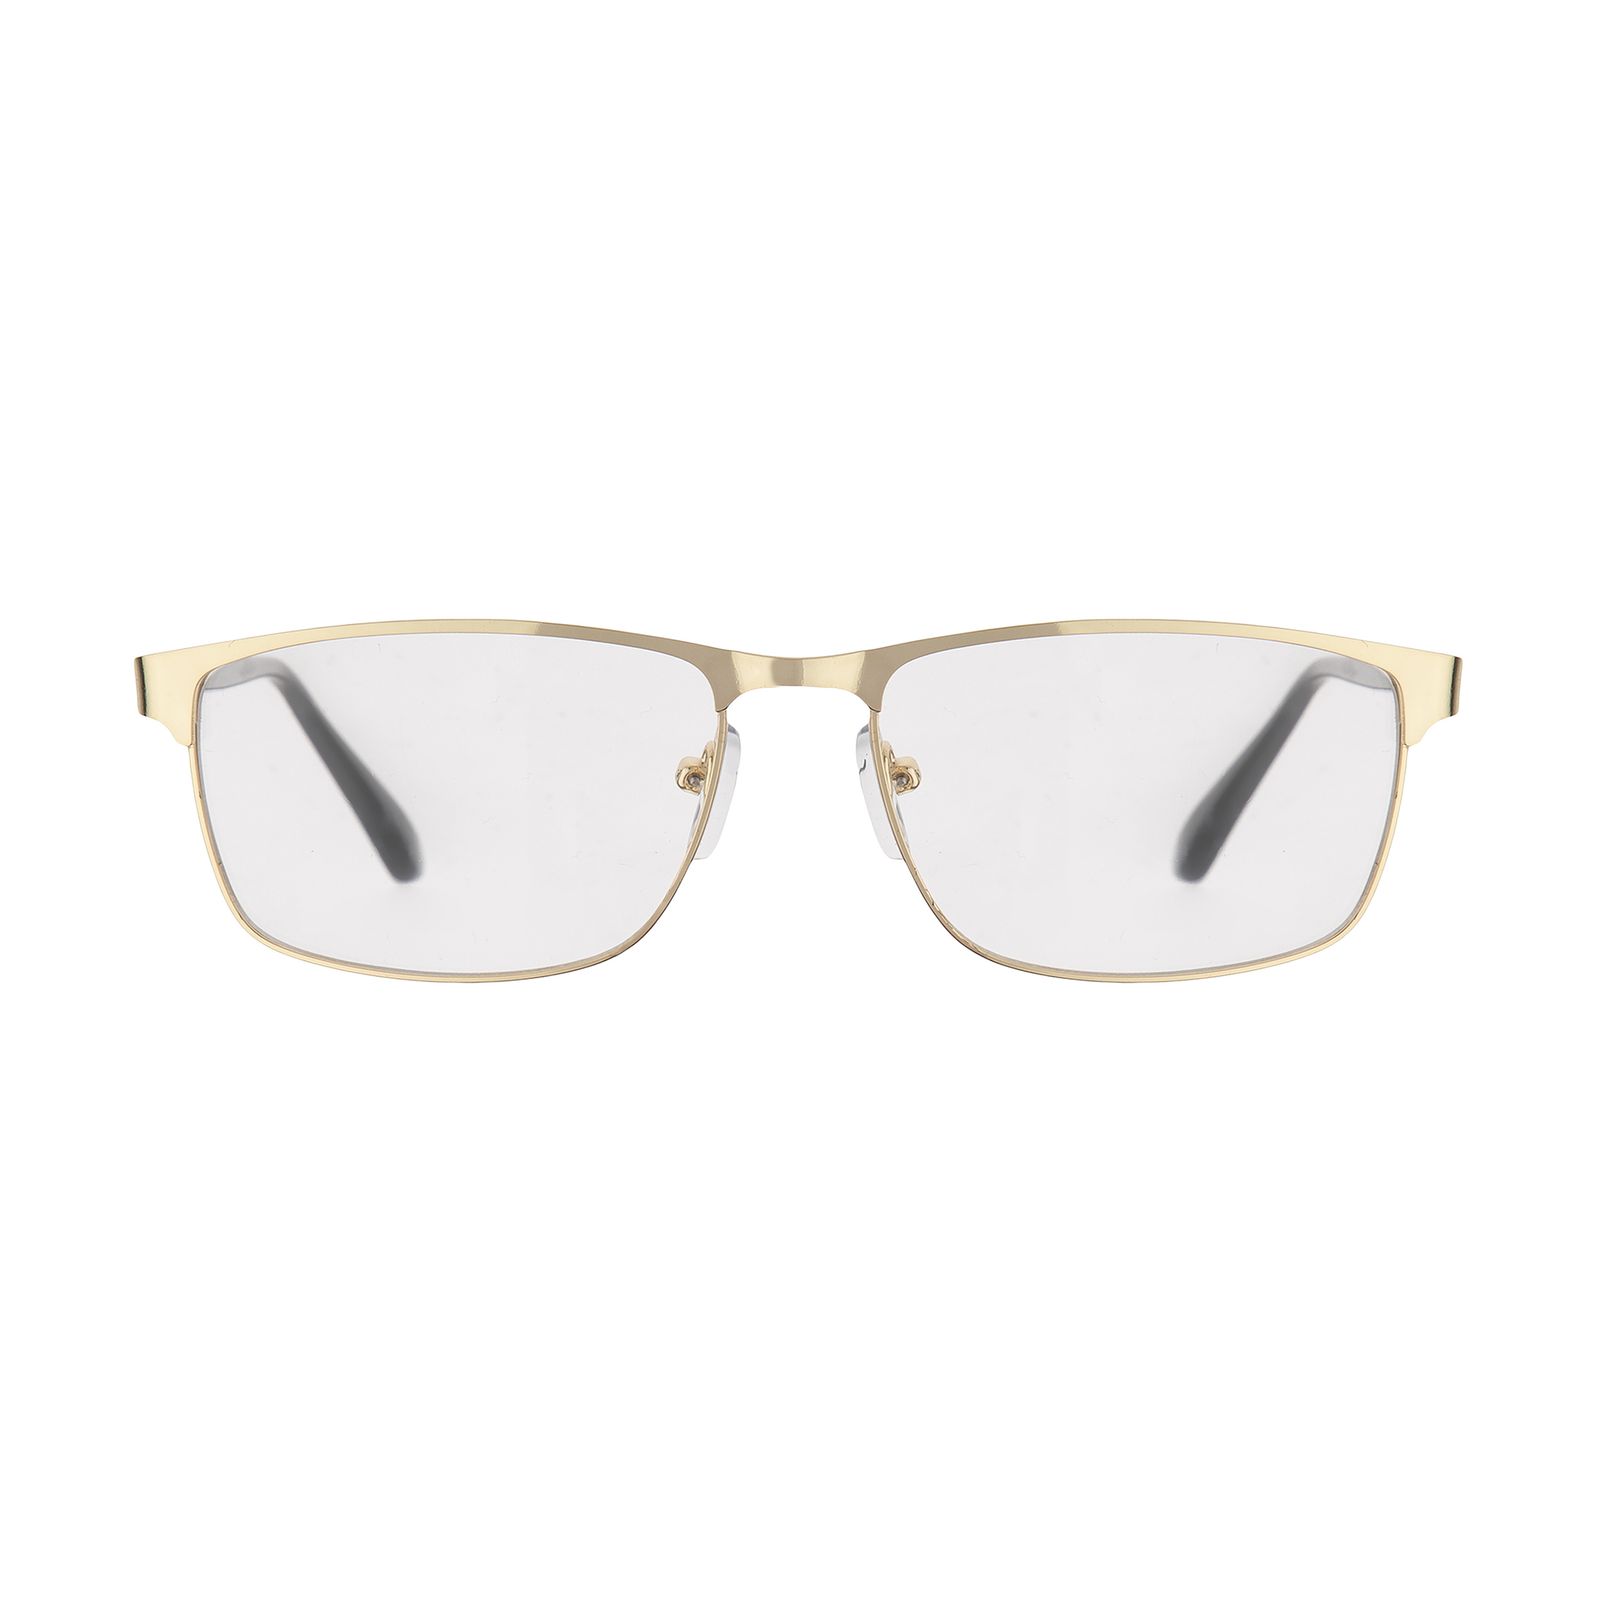 فریم عینک طبی امپریو آرمانی مدل 8986 -  - 1